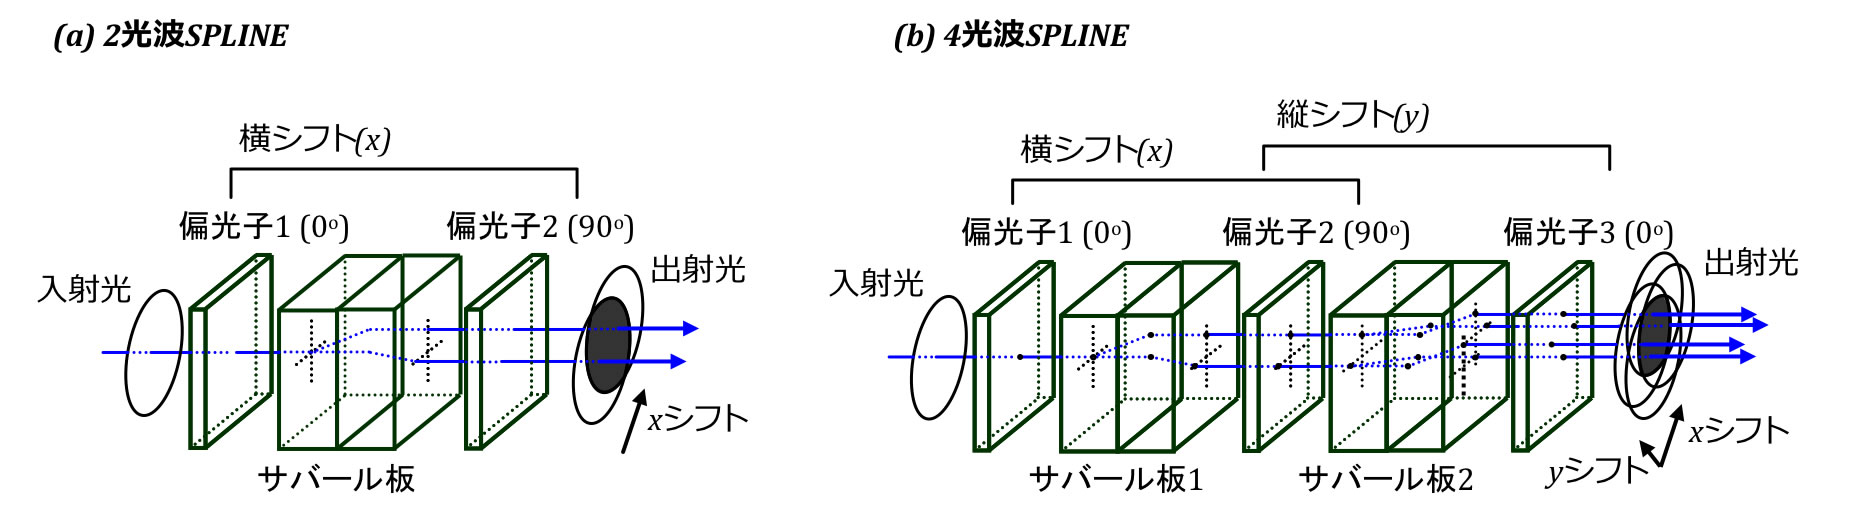 図4：サバール板を用いたシアリングナル干渉計(SPLINE)の原理。(a)x方向にシフトさせた2光波SPLINEN,および(b)x,y方向にシフトさせた4光波SPLINE。